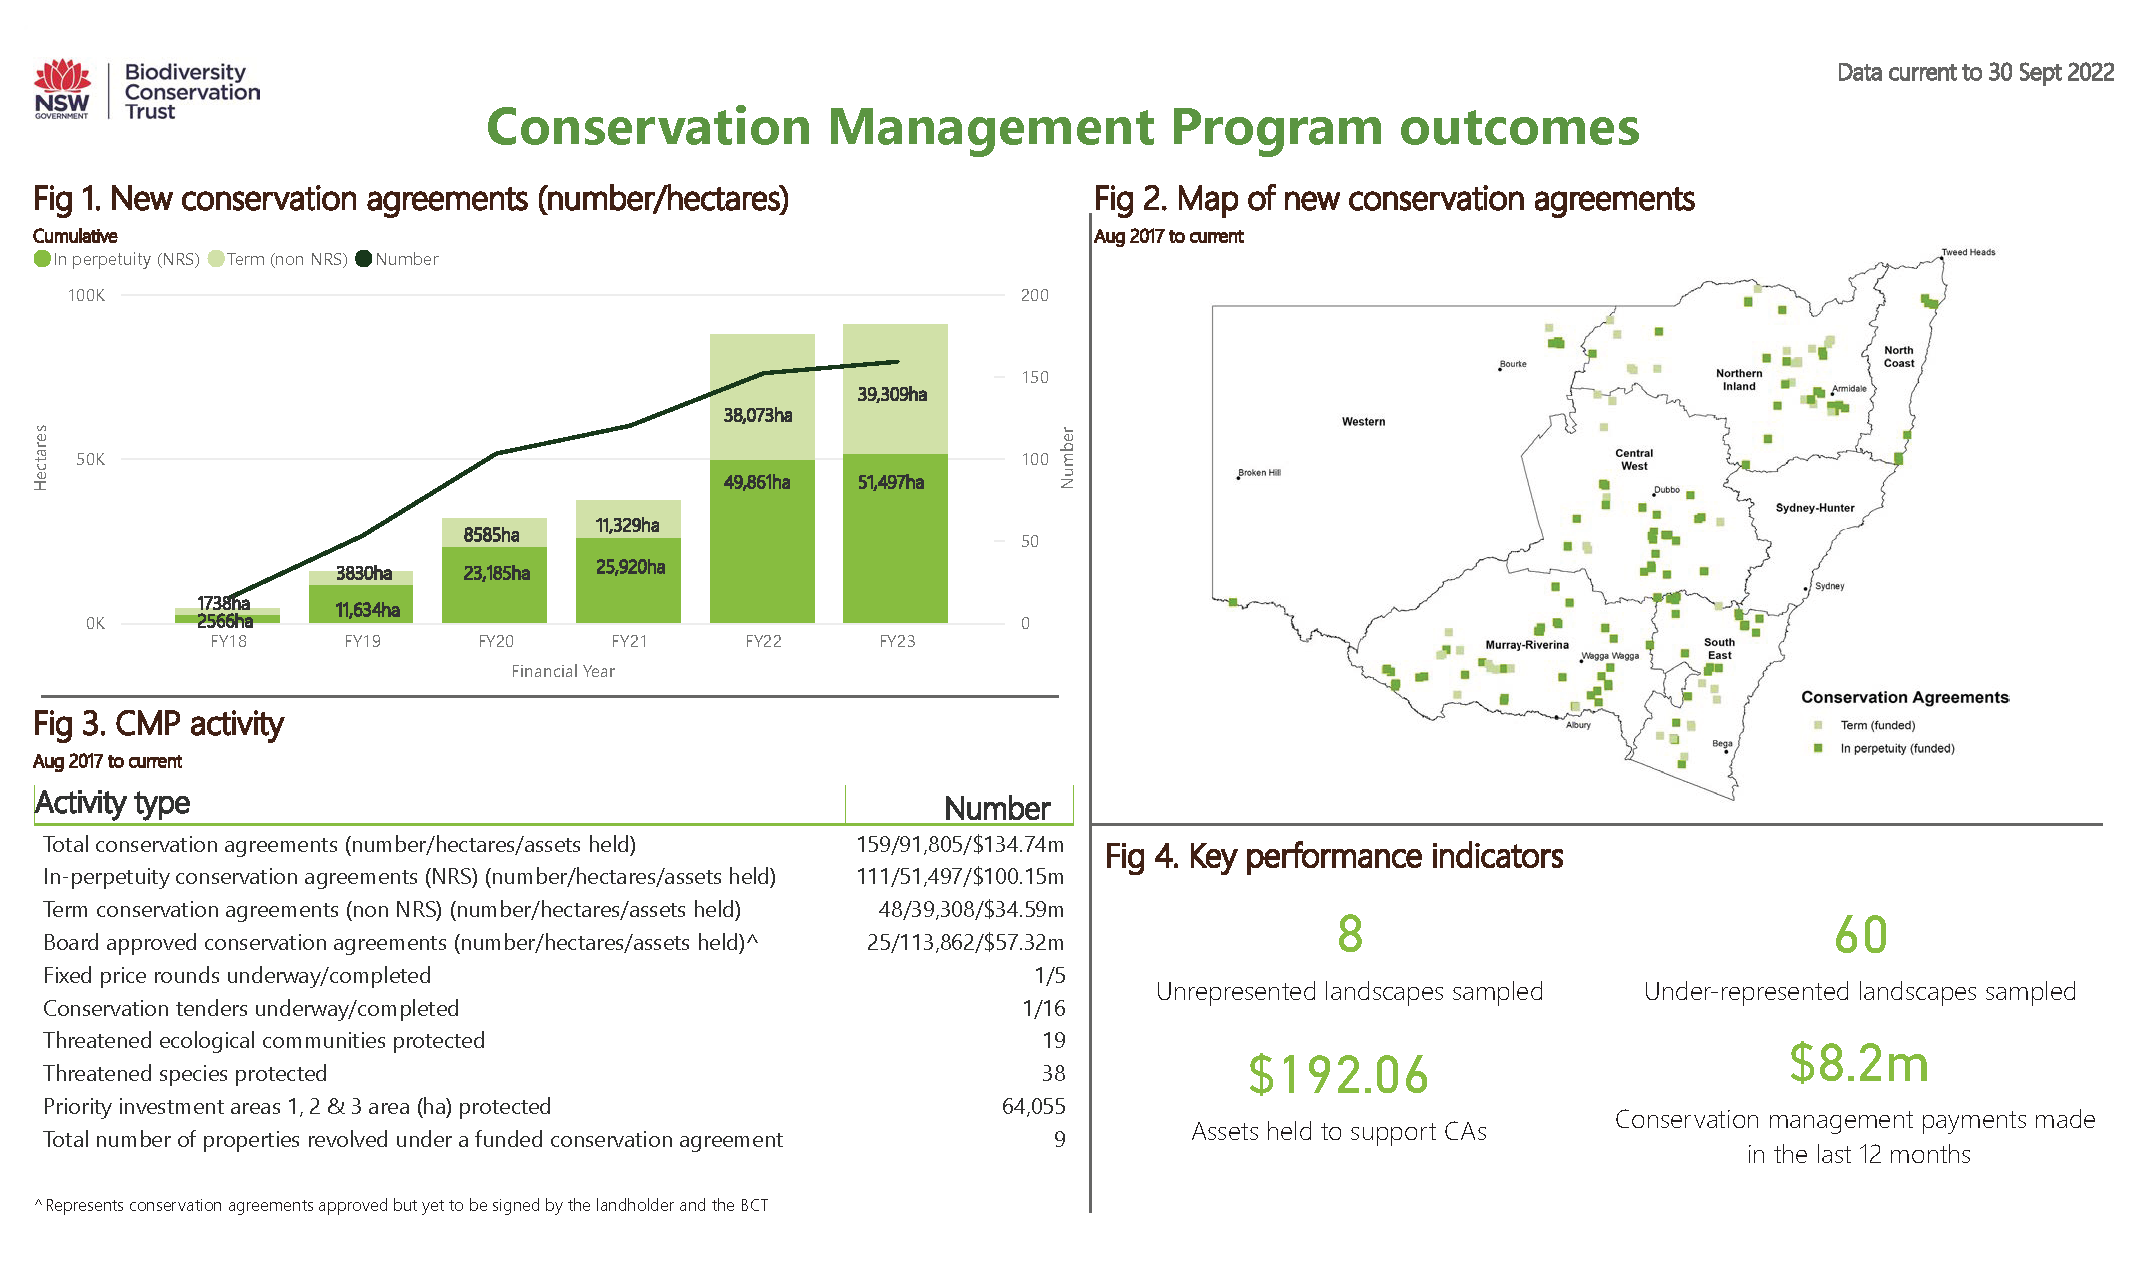 Conservation Management Program dashboard data as at 30 September 2022